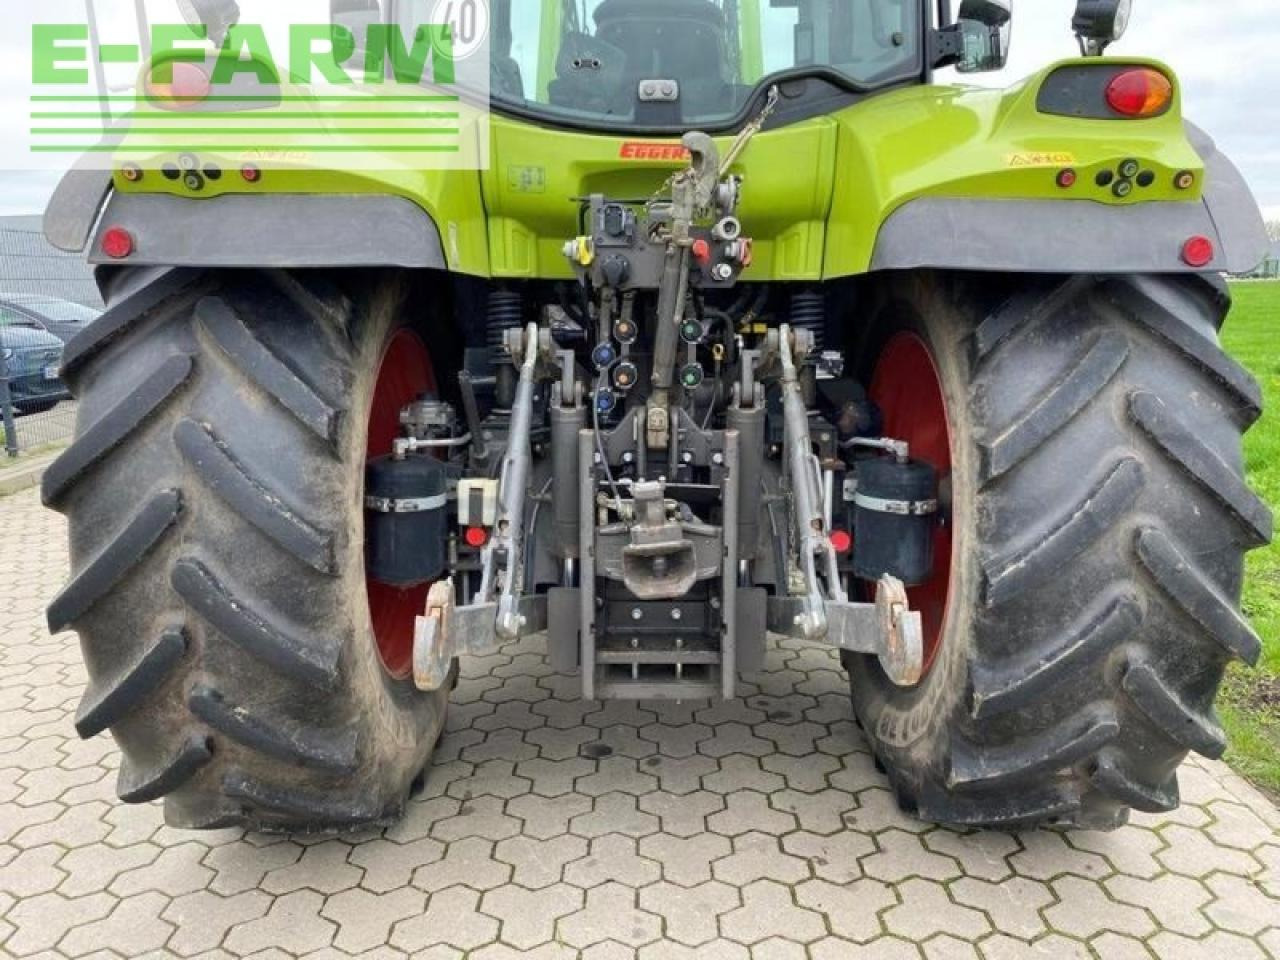 Traktor CLAAS arion 620 cis mit frontlader CIS